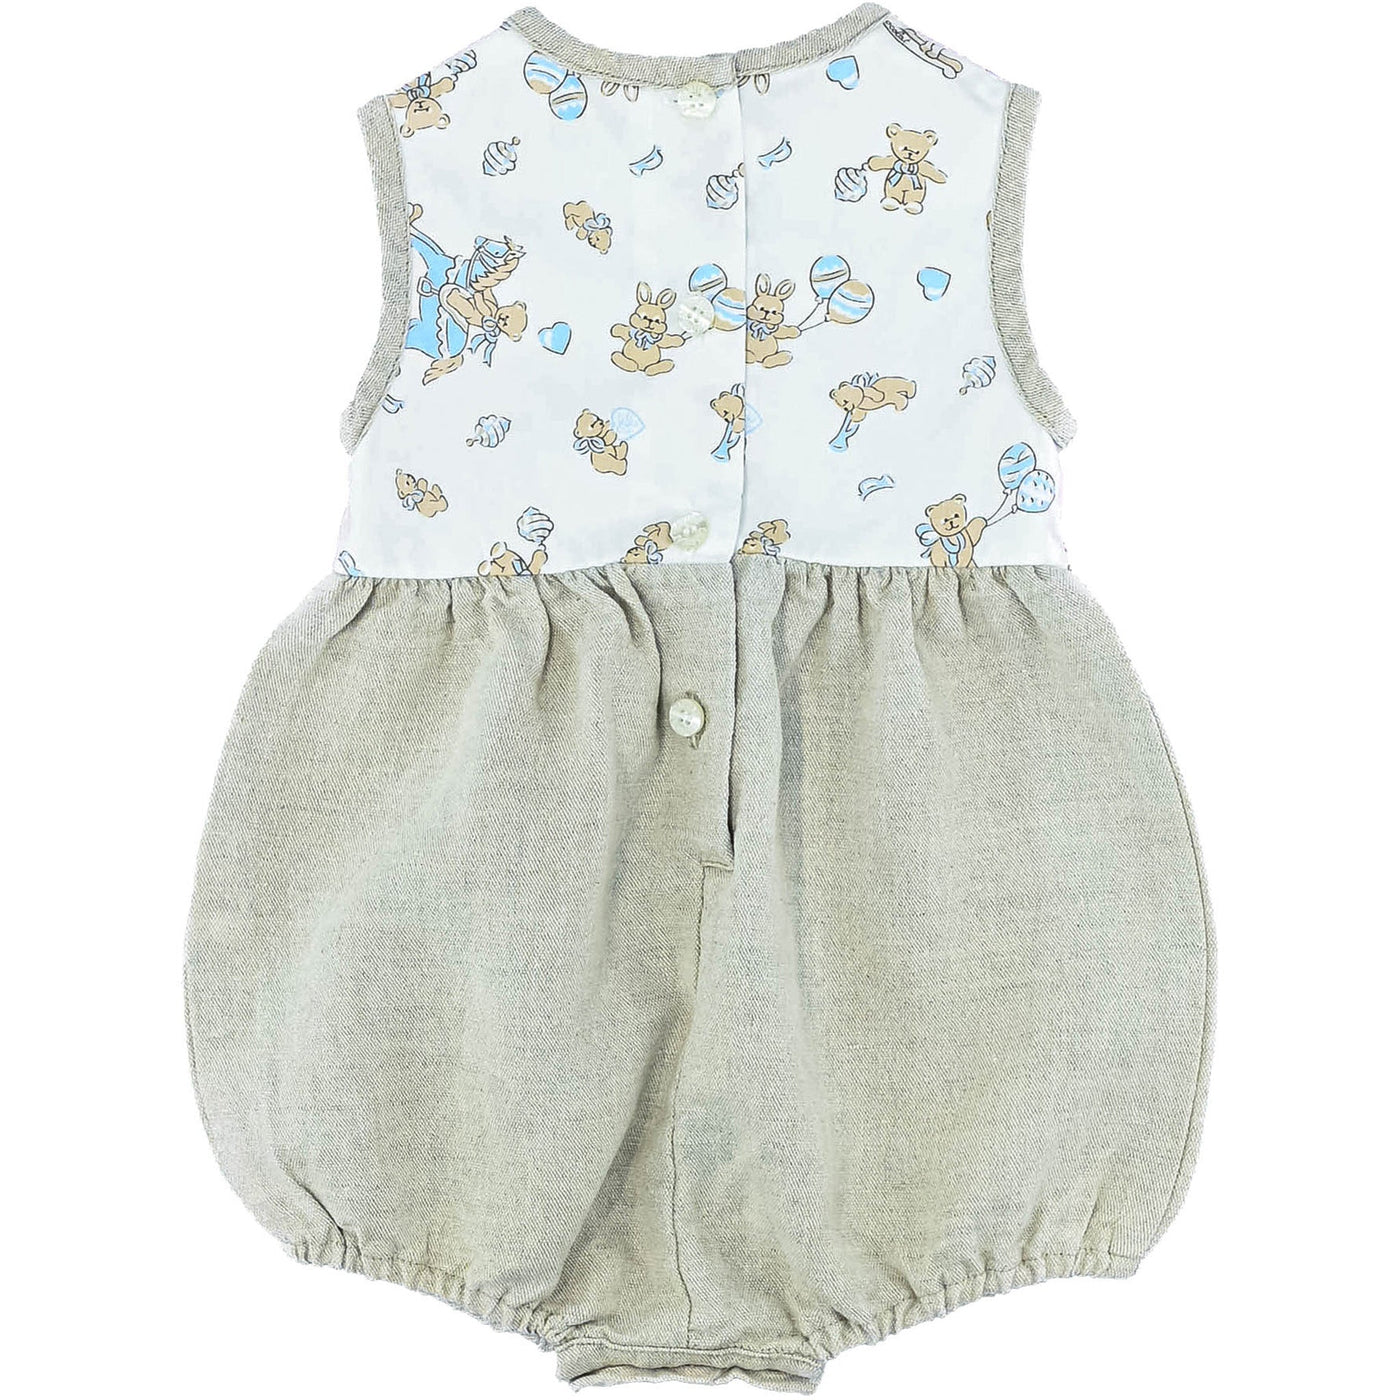 Combinaison courte de seconde main en lin et coton pour bébé garçon de 6 mois - photo verso